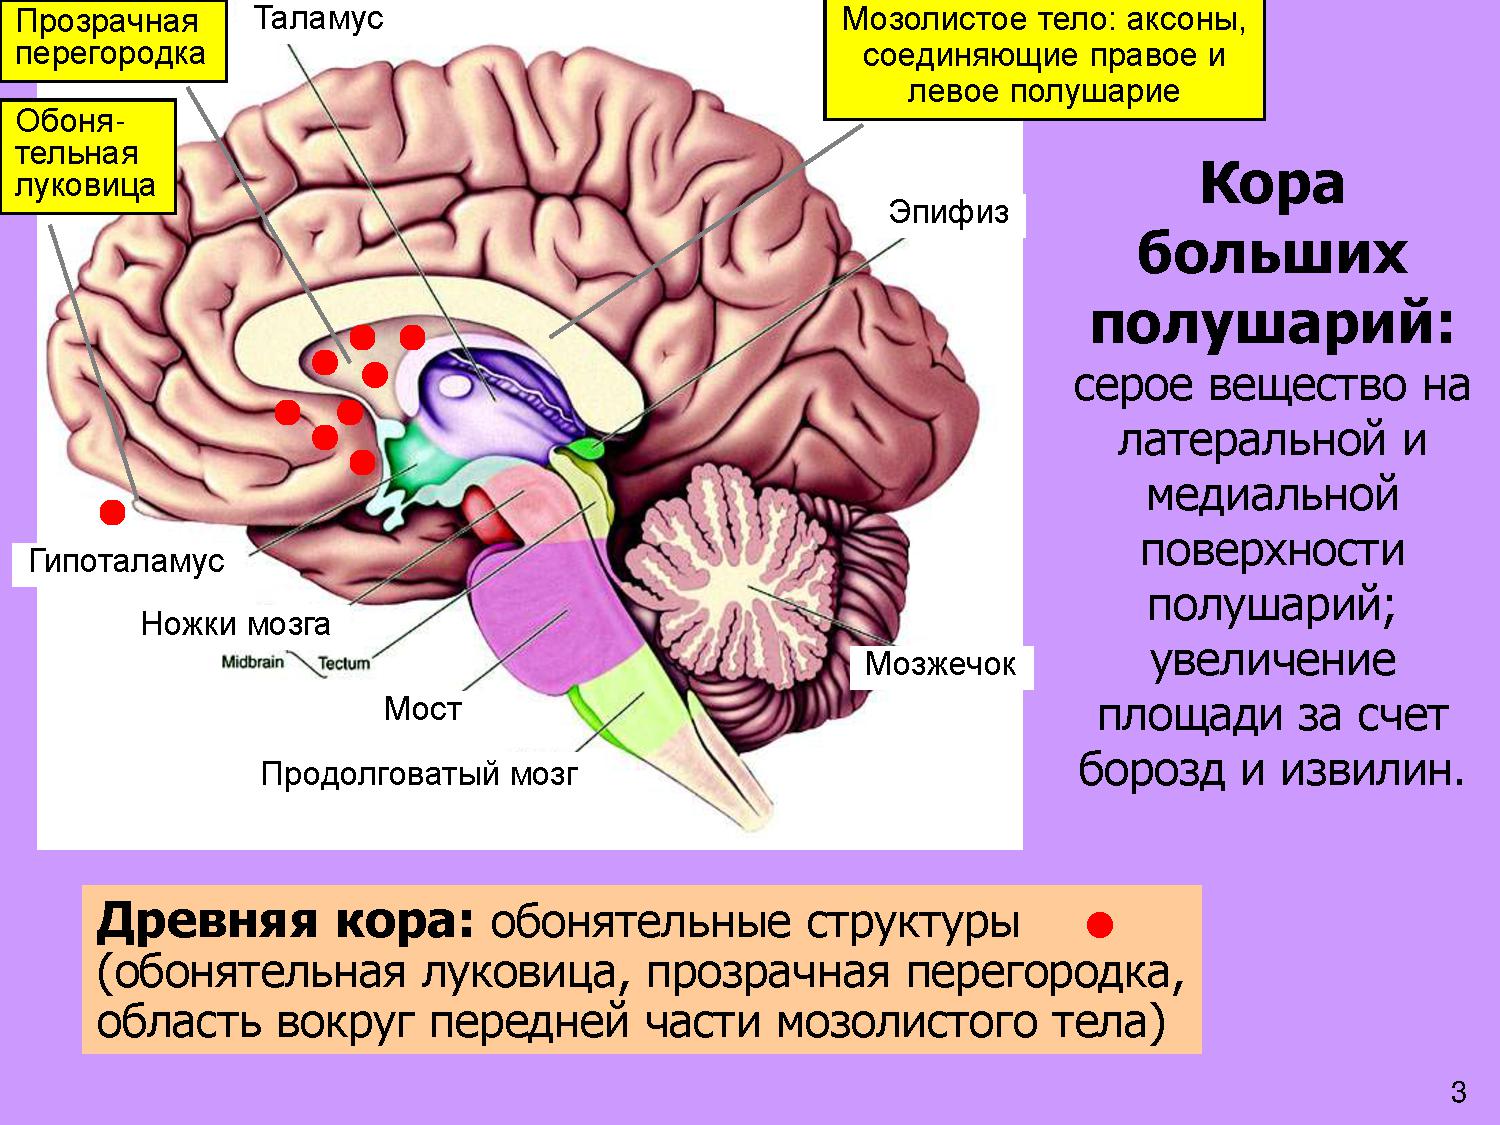 Признаки характеризующие кору головного мозга. Мозолистое тело конечного мозга функции. Прозрачная перегородка мозга анатомия. Строение мозолистого тела головного мозга. Таламус, гипоталамус, мост, мозжечок, продолговатый мозг..